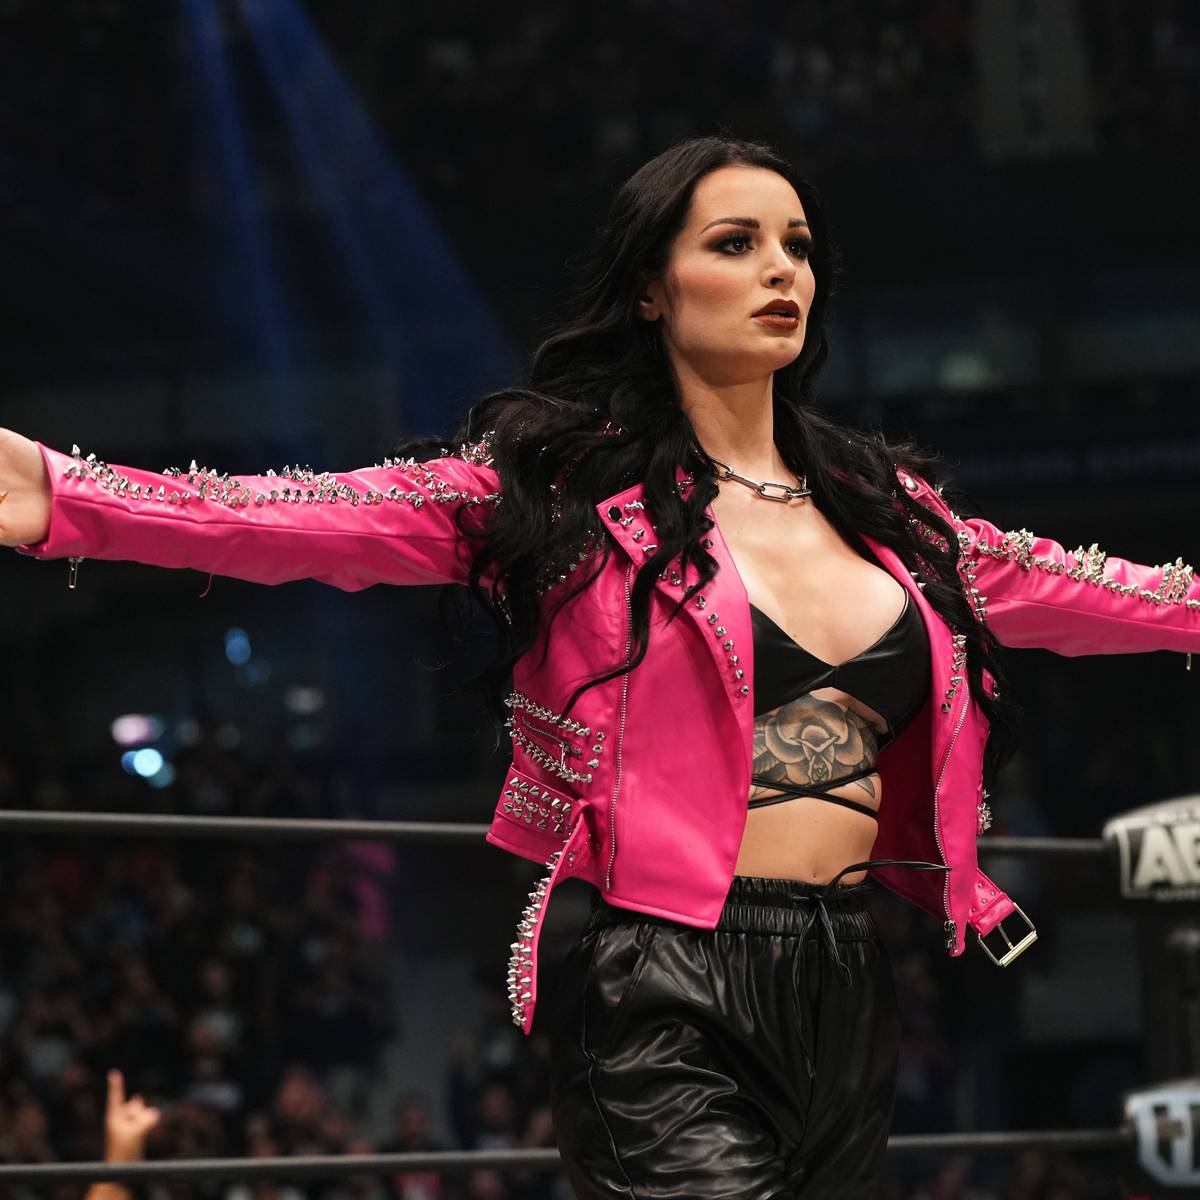 WWE-Rivale AEW holt den bislang größten weiblichen Star: Saraya, die frühere Paige, feiert bei Dynamite: Grand Slam eine umjubelte Premiere - um ihren Status gibt es aber noch Fragezeichen.